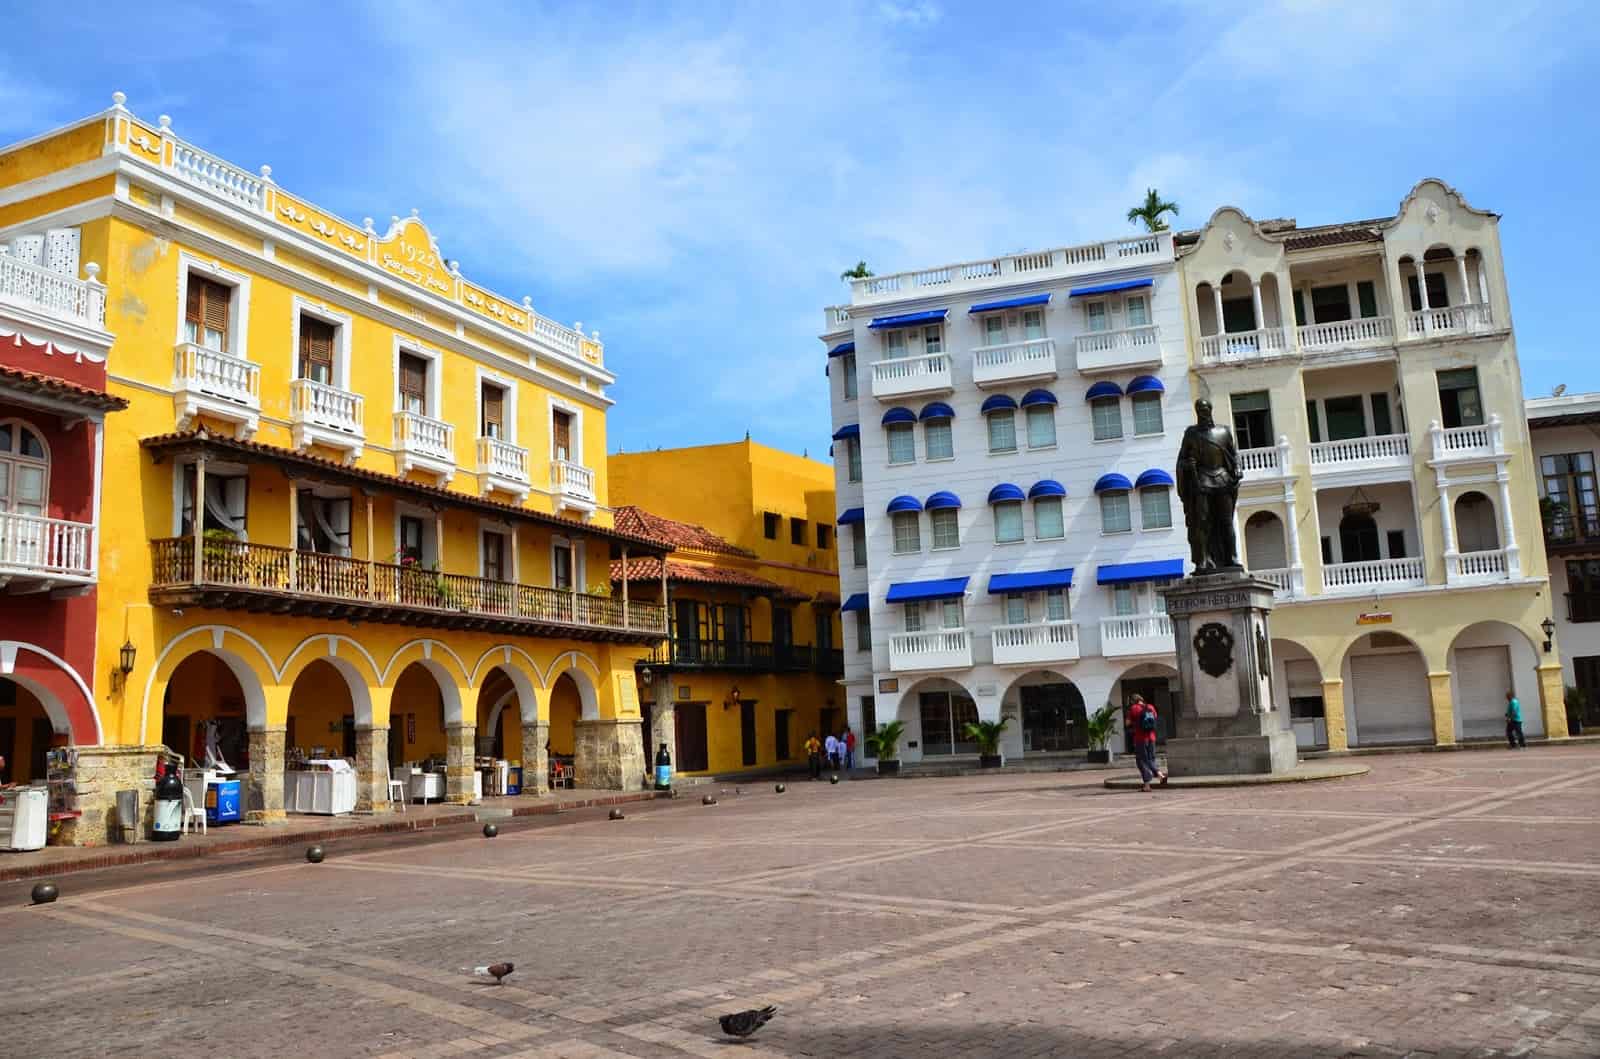 Buildings around Plaza de los Coches in El Centro, Cartagena, Colombia